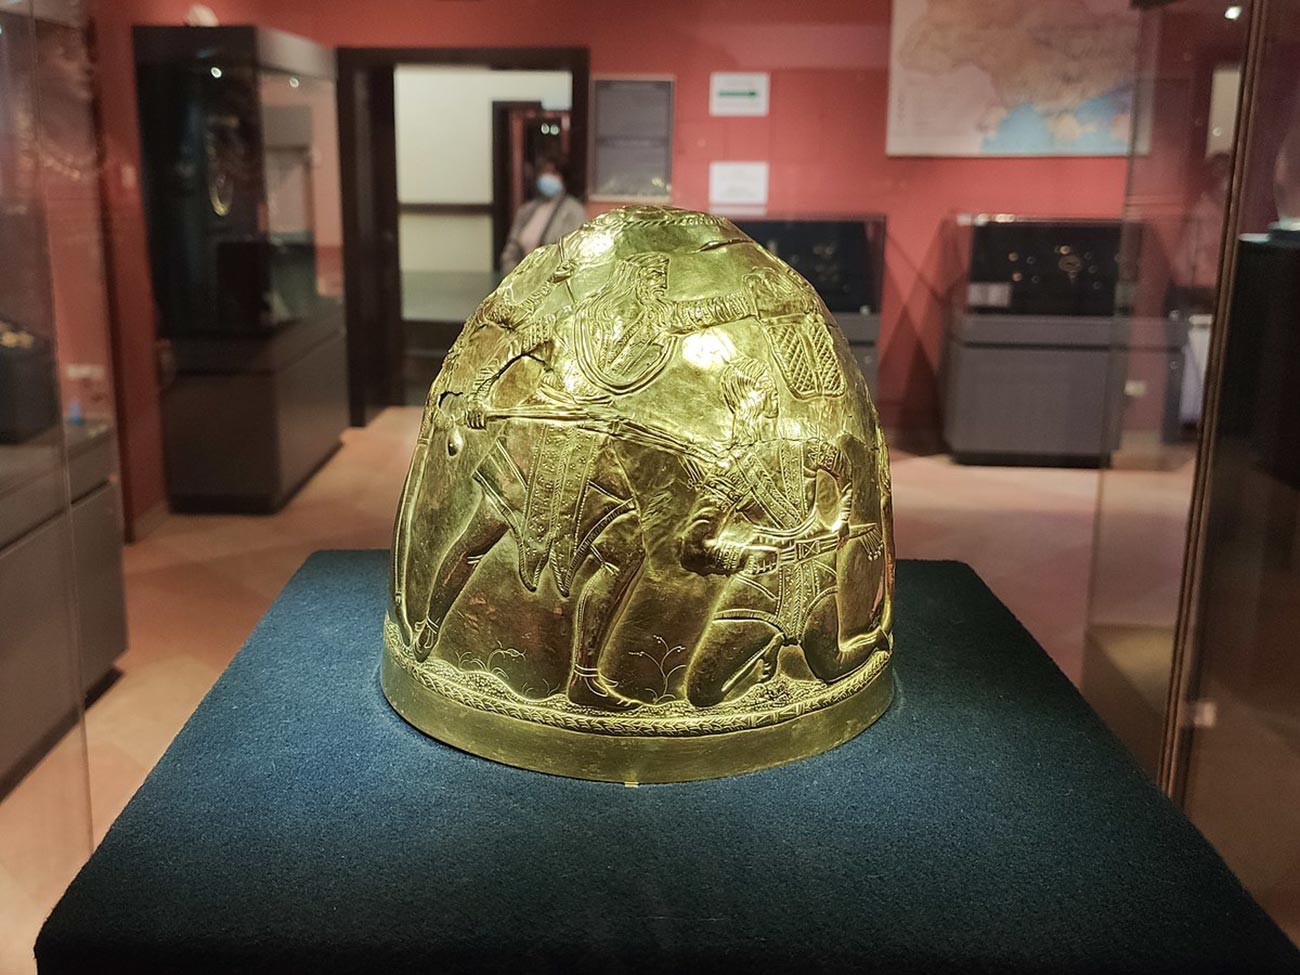 Elmo dourado cerimonial de governante cita do século 4 a.C. Encontrado em 1988 perto da vila de Zrubne, região de Donetsk, na atual Ucrânia. Exposição do Museu de Tesouros Históricos da Ucrânia